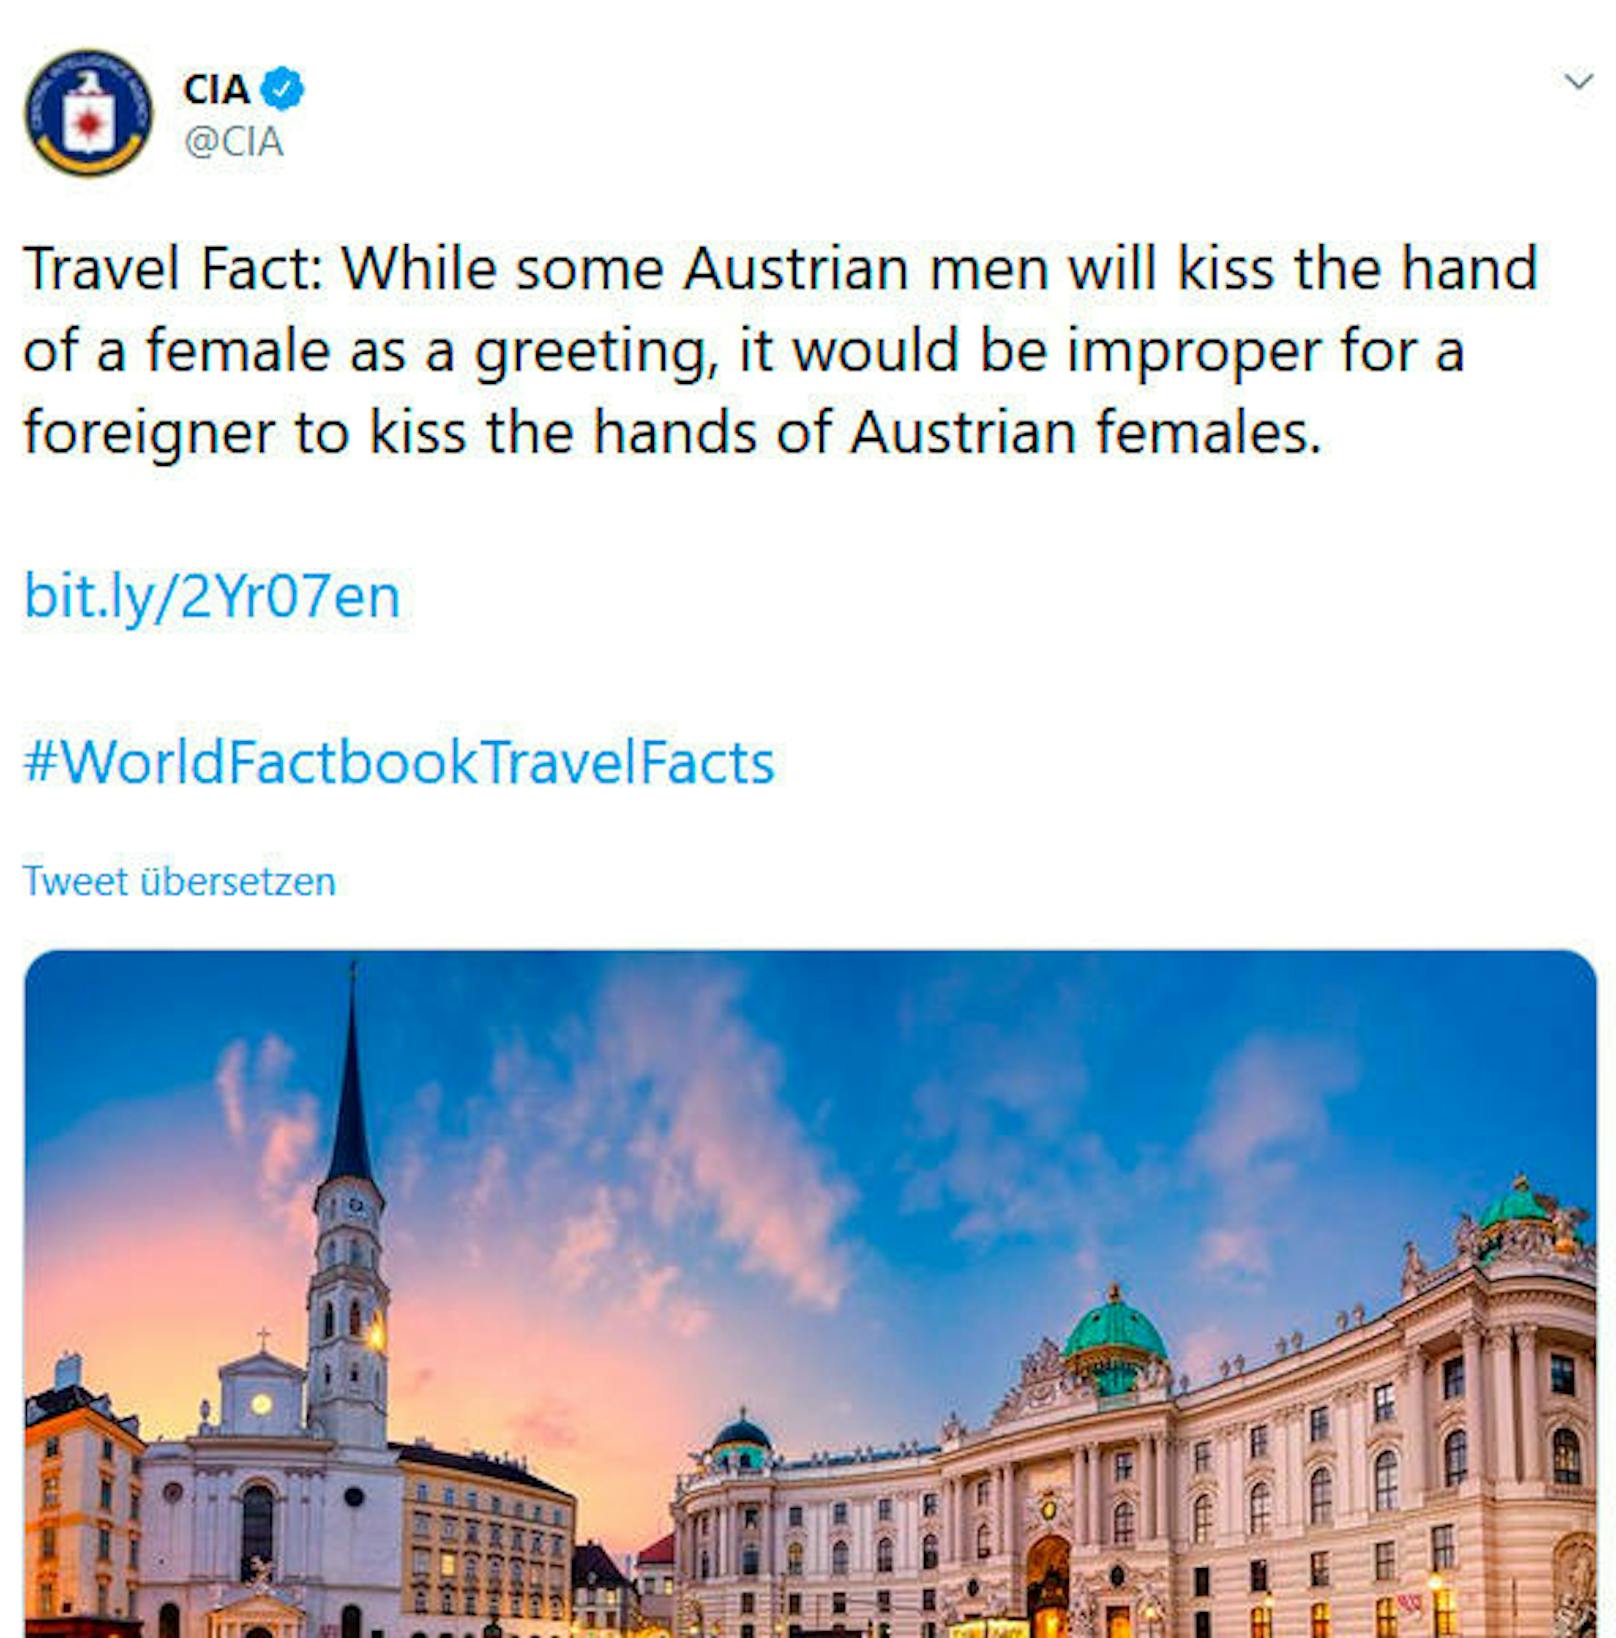 Der US-Geheimdienst CIA postete auf Twitter eine etwas skurrile Benimmregel für Österreich.